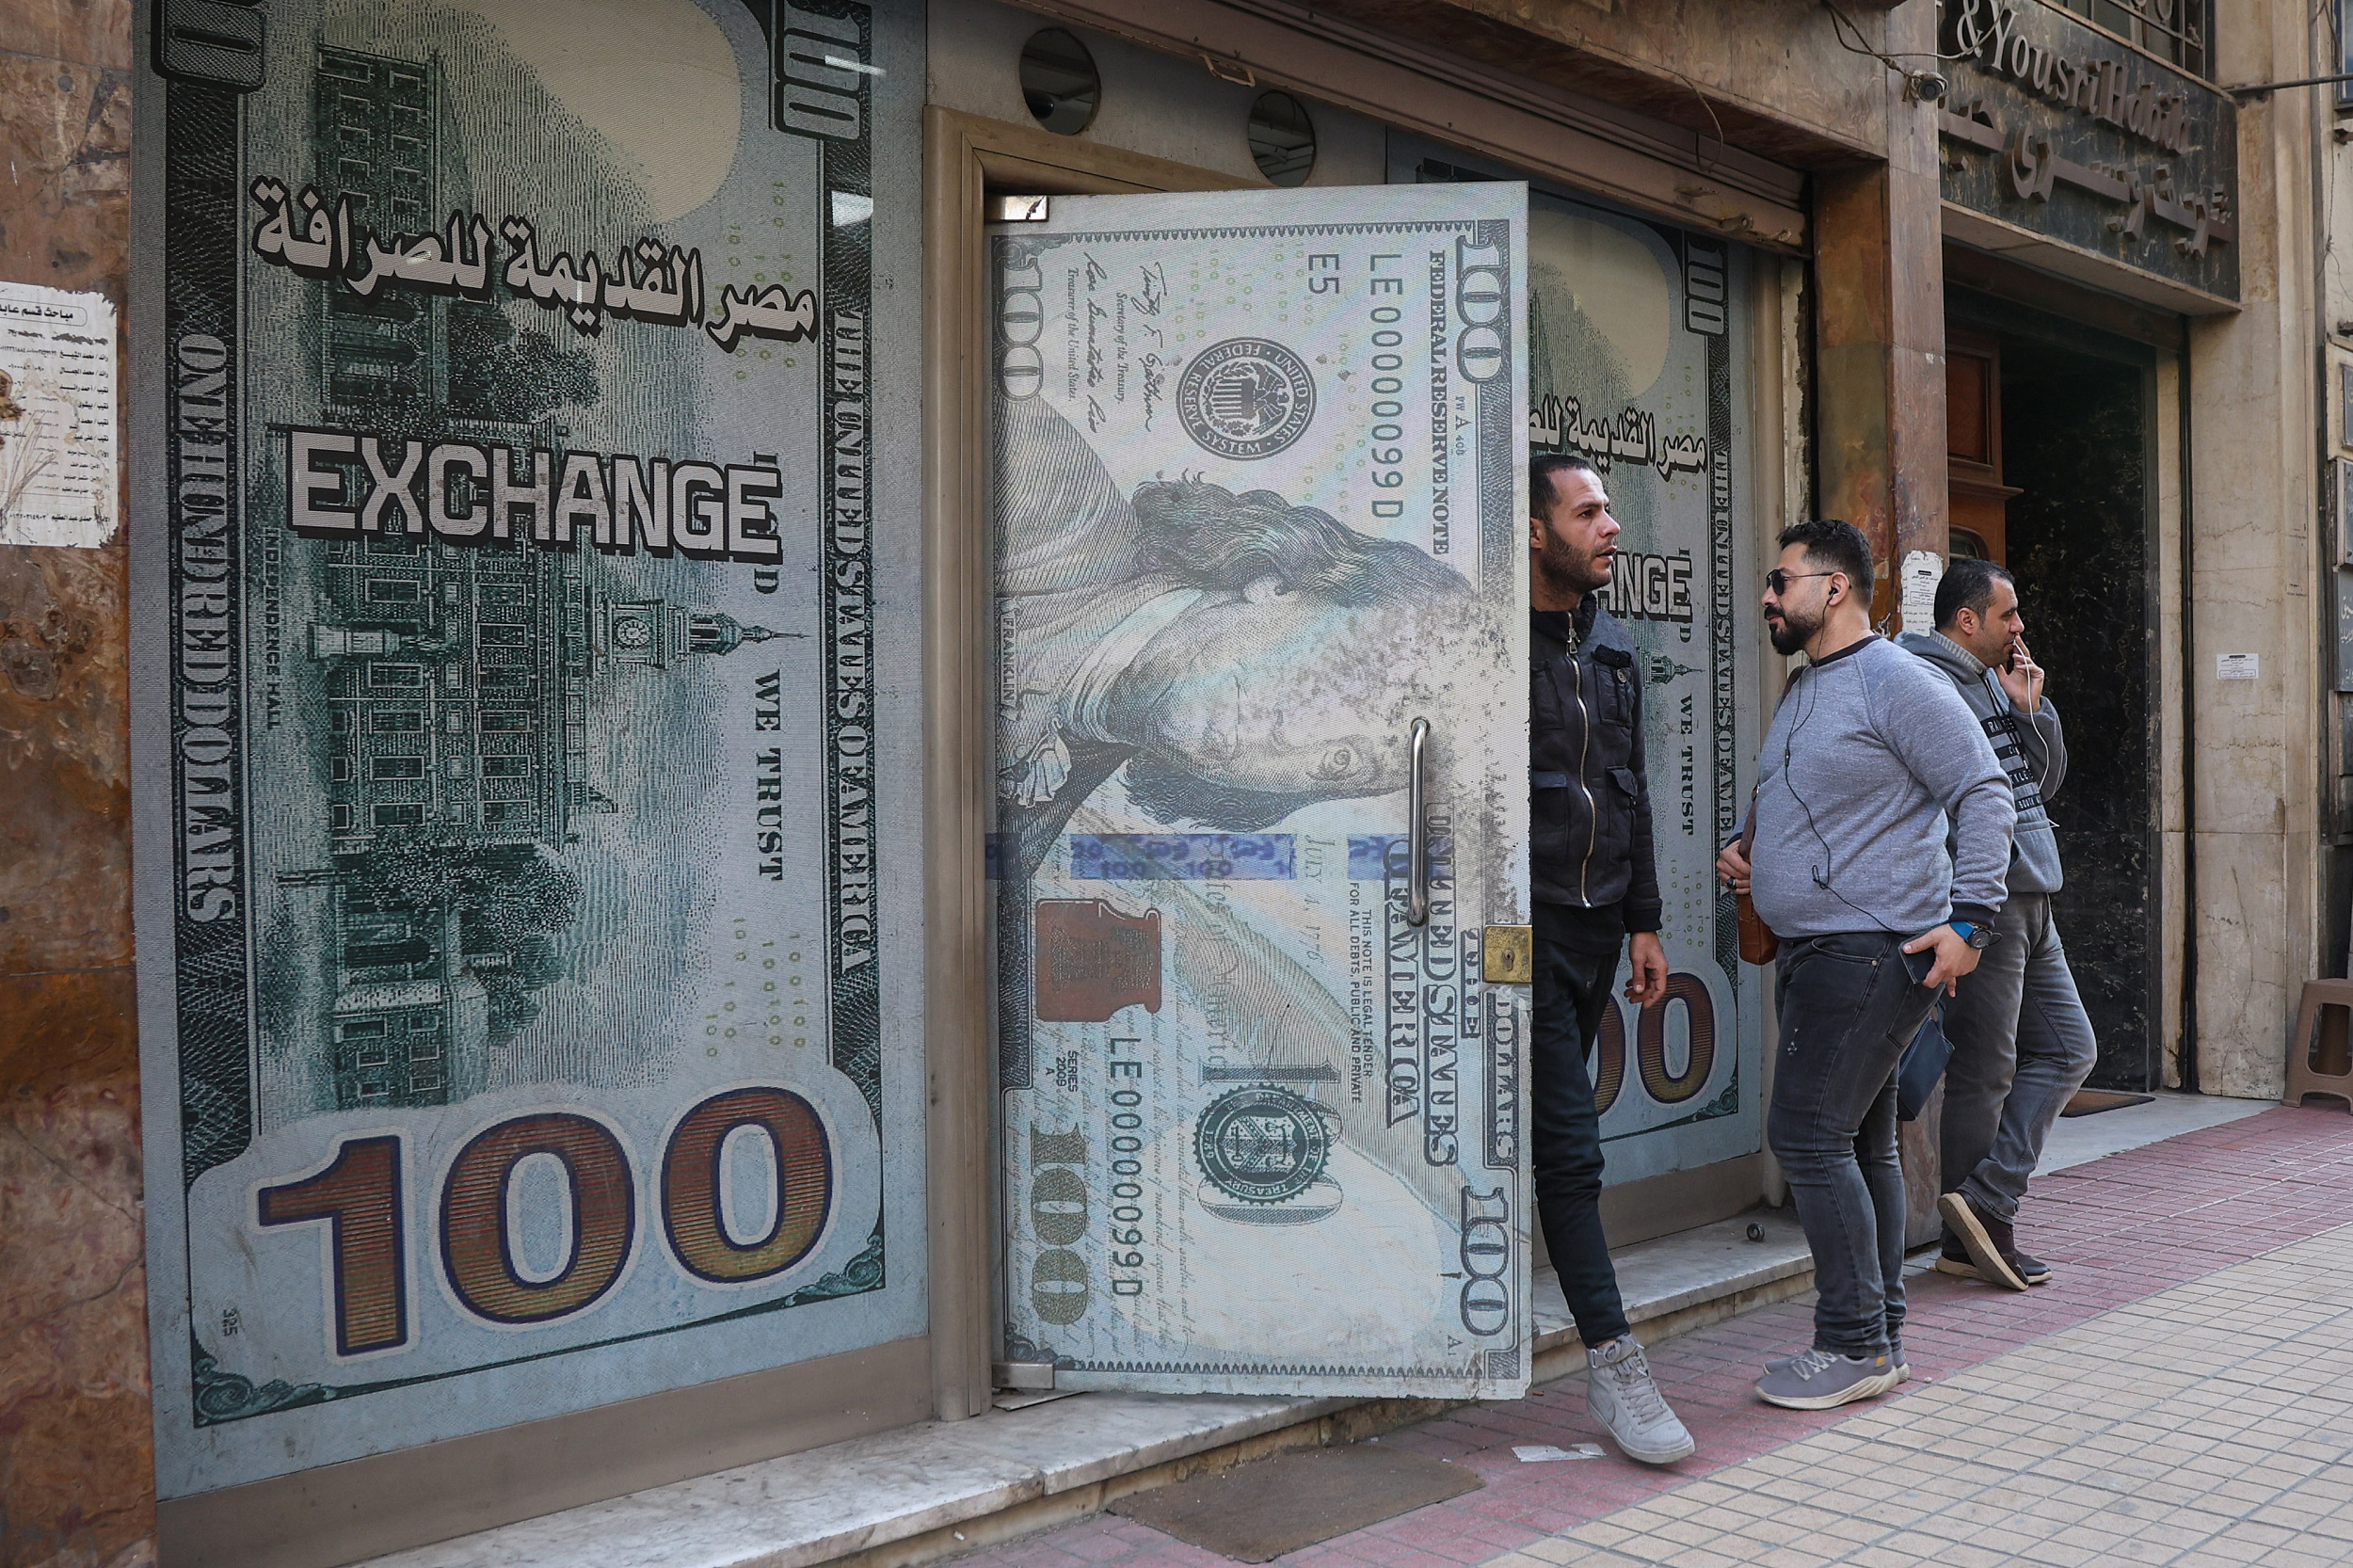 埃镑汇率市场化后暴跌近40%,危机中的埃及经济走向何方?